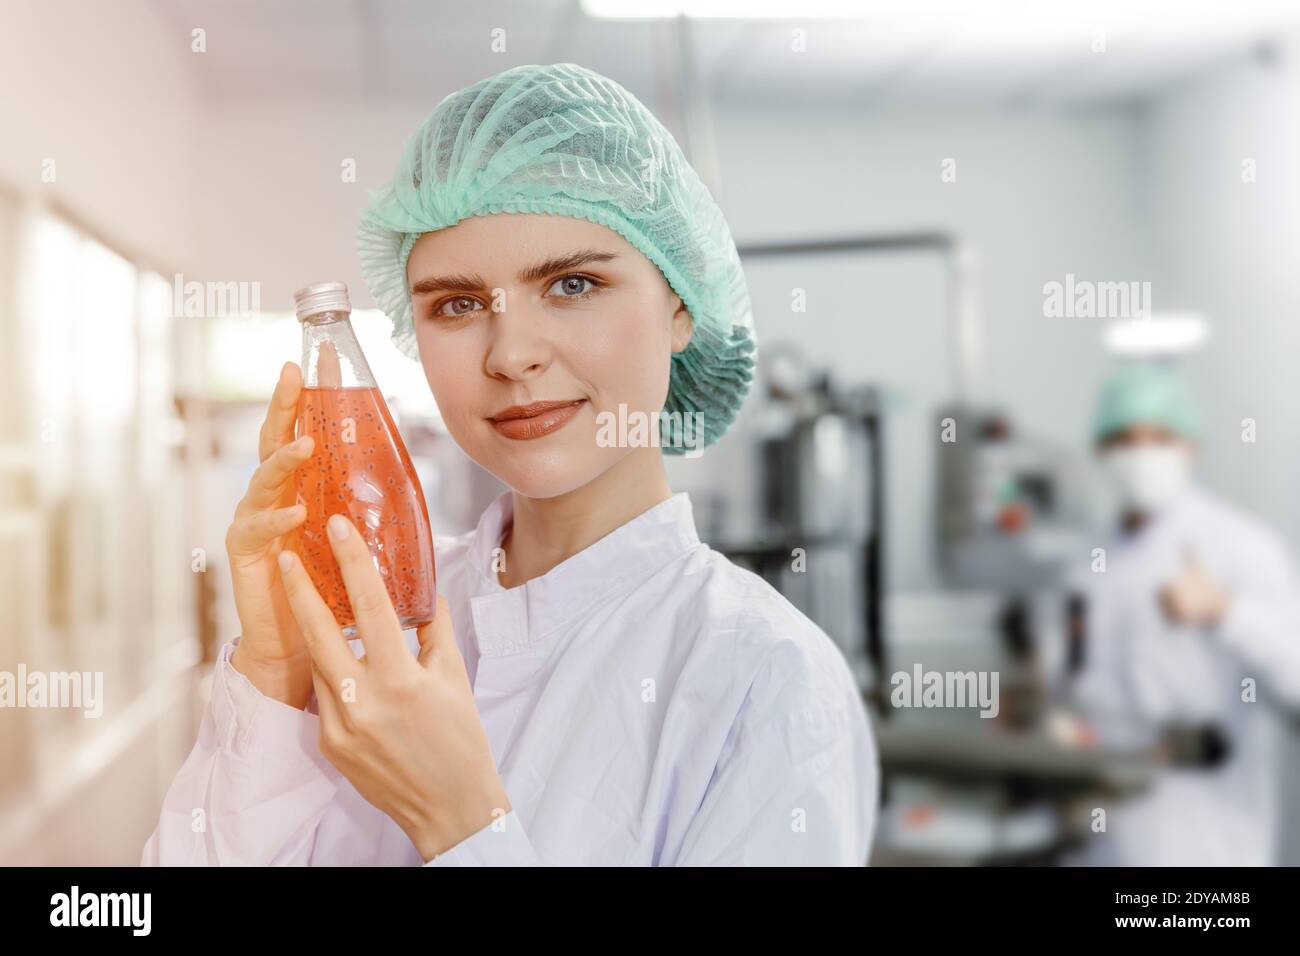 Schöne Frau Hand halten Saft trinken in Glasflasche für Advance Science Getränk Produkt für Schönheit und gesunde Frauen Konzept Stockfoto